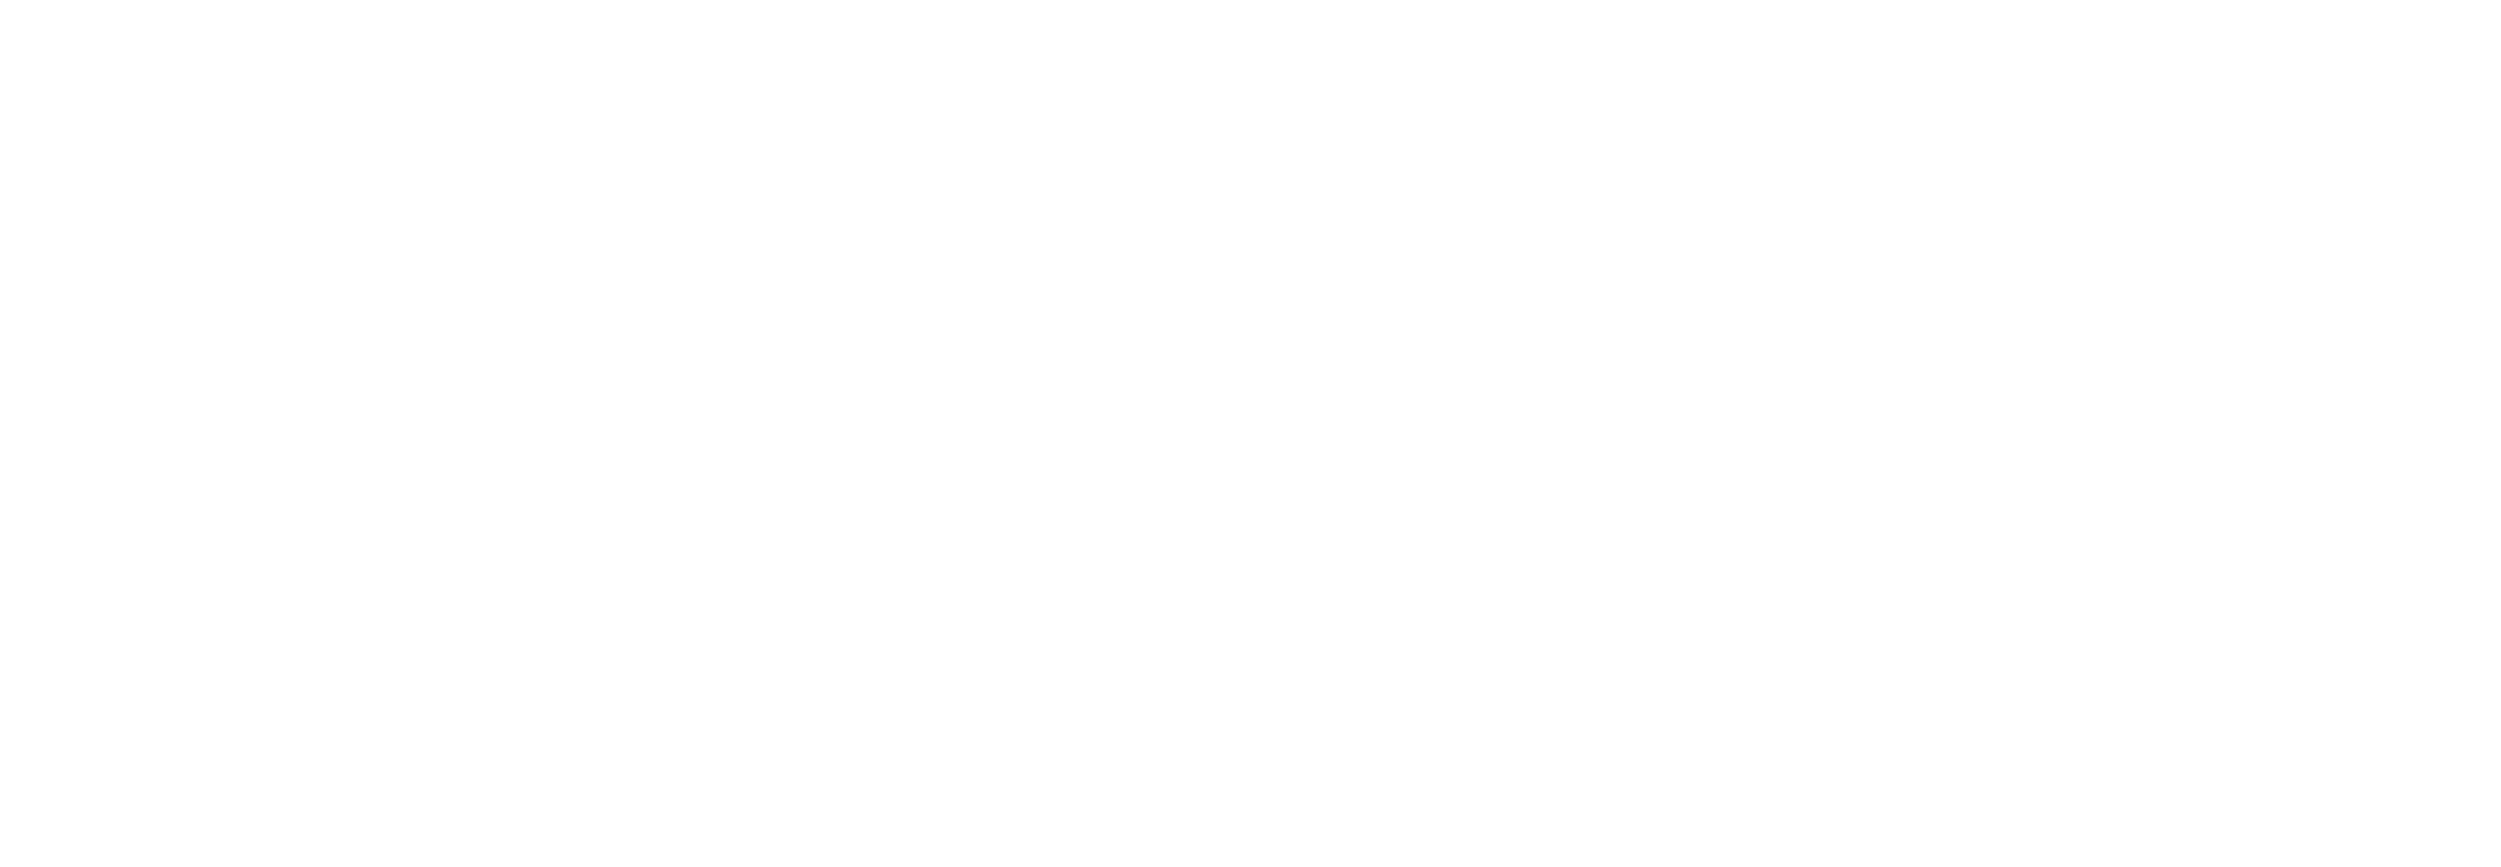 Certified COBRA Insurance Advisor badge